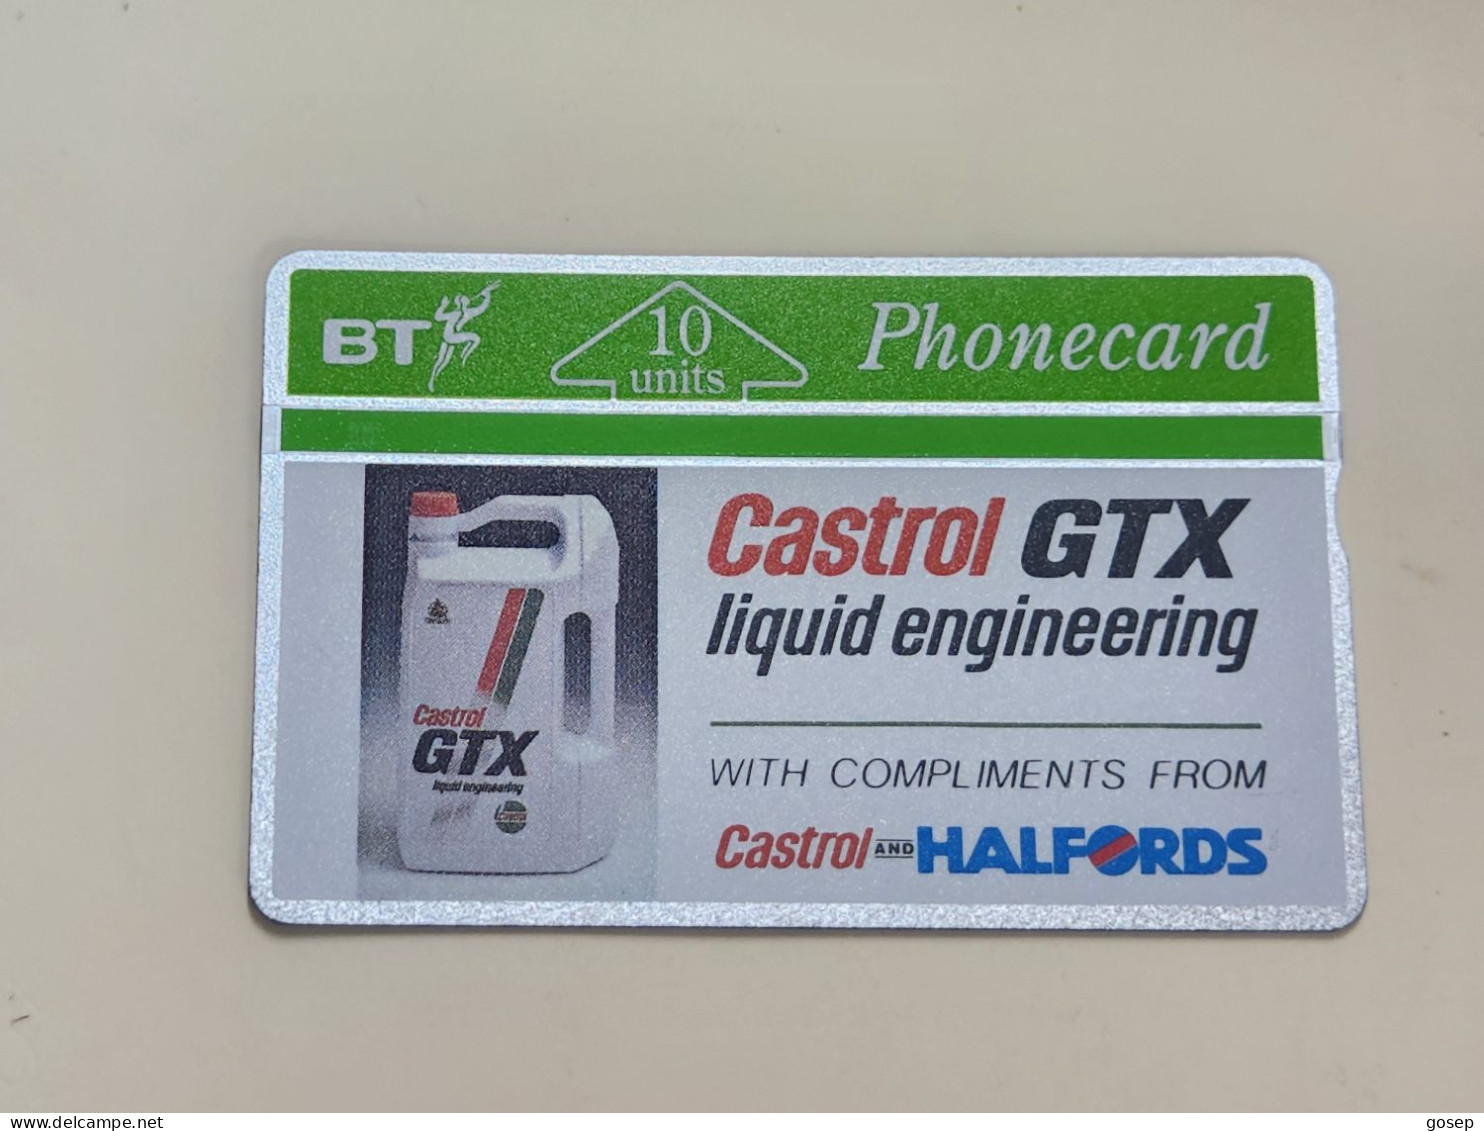 United Kingdom-(BTA019)-CASTROL-GTX-HALFORDS-(10units)-(43)-(166F09230)-price Cataloge8.00£-mint-card+1card Prepiad Free - BT Werbezwecke